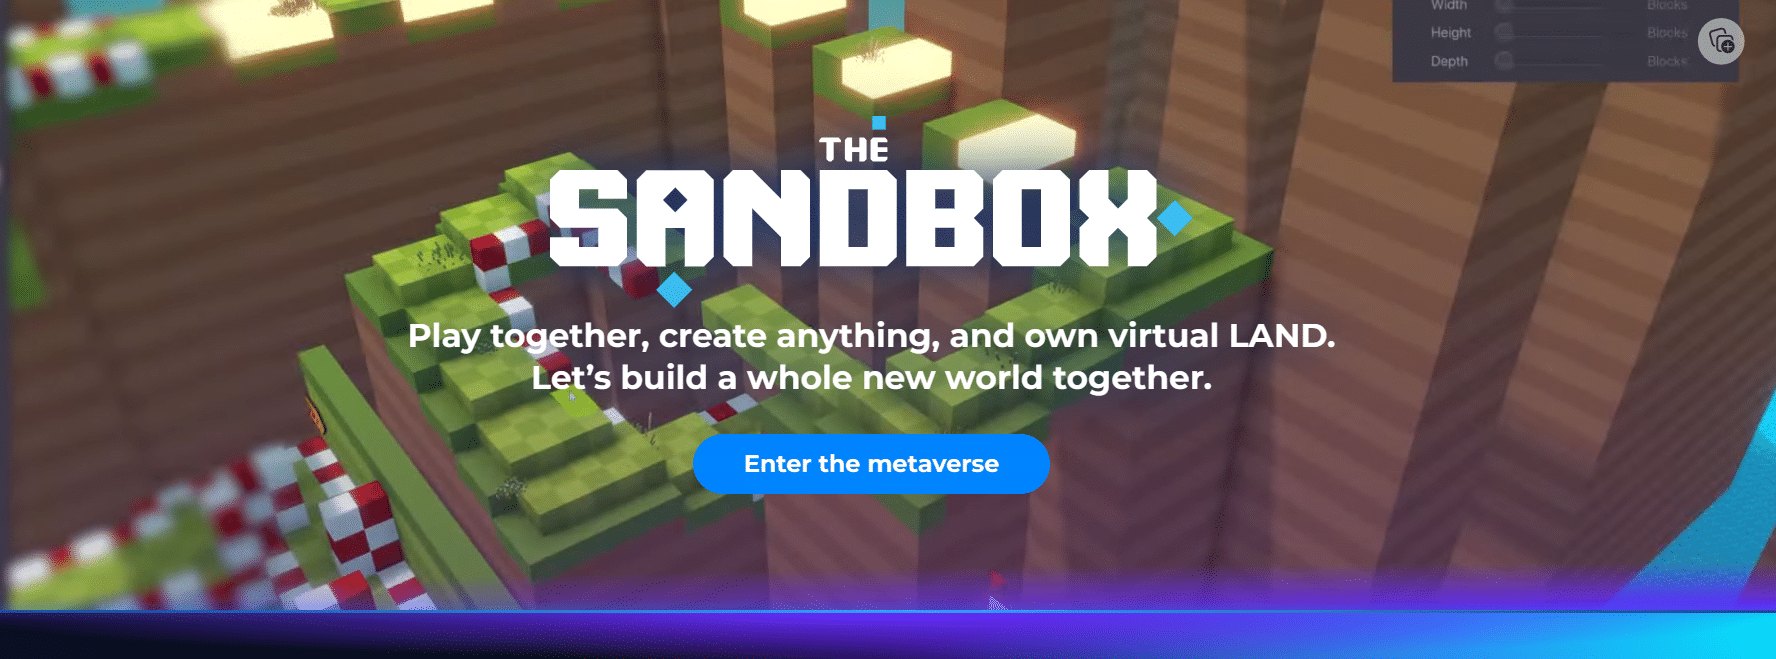 The Sandbox p2e mobile games